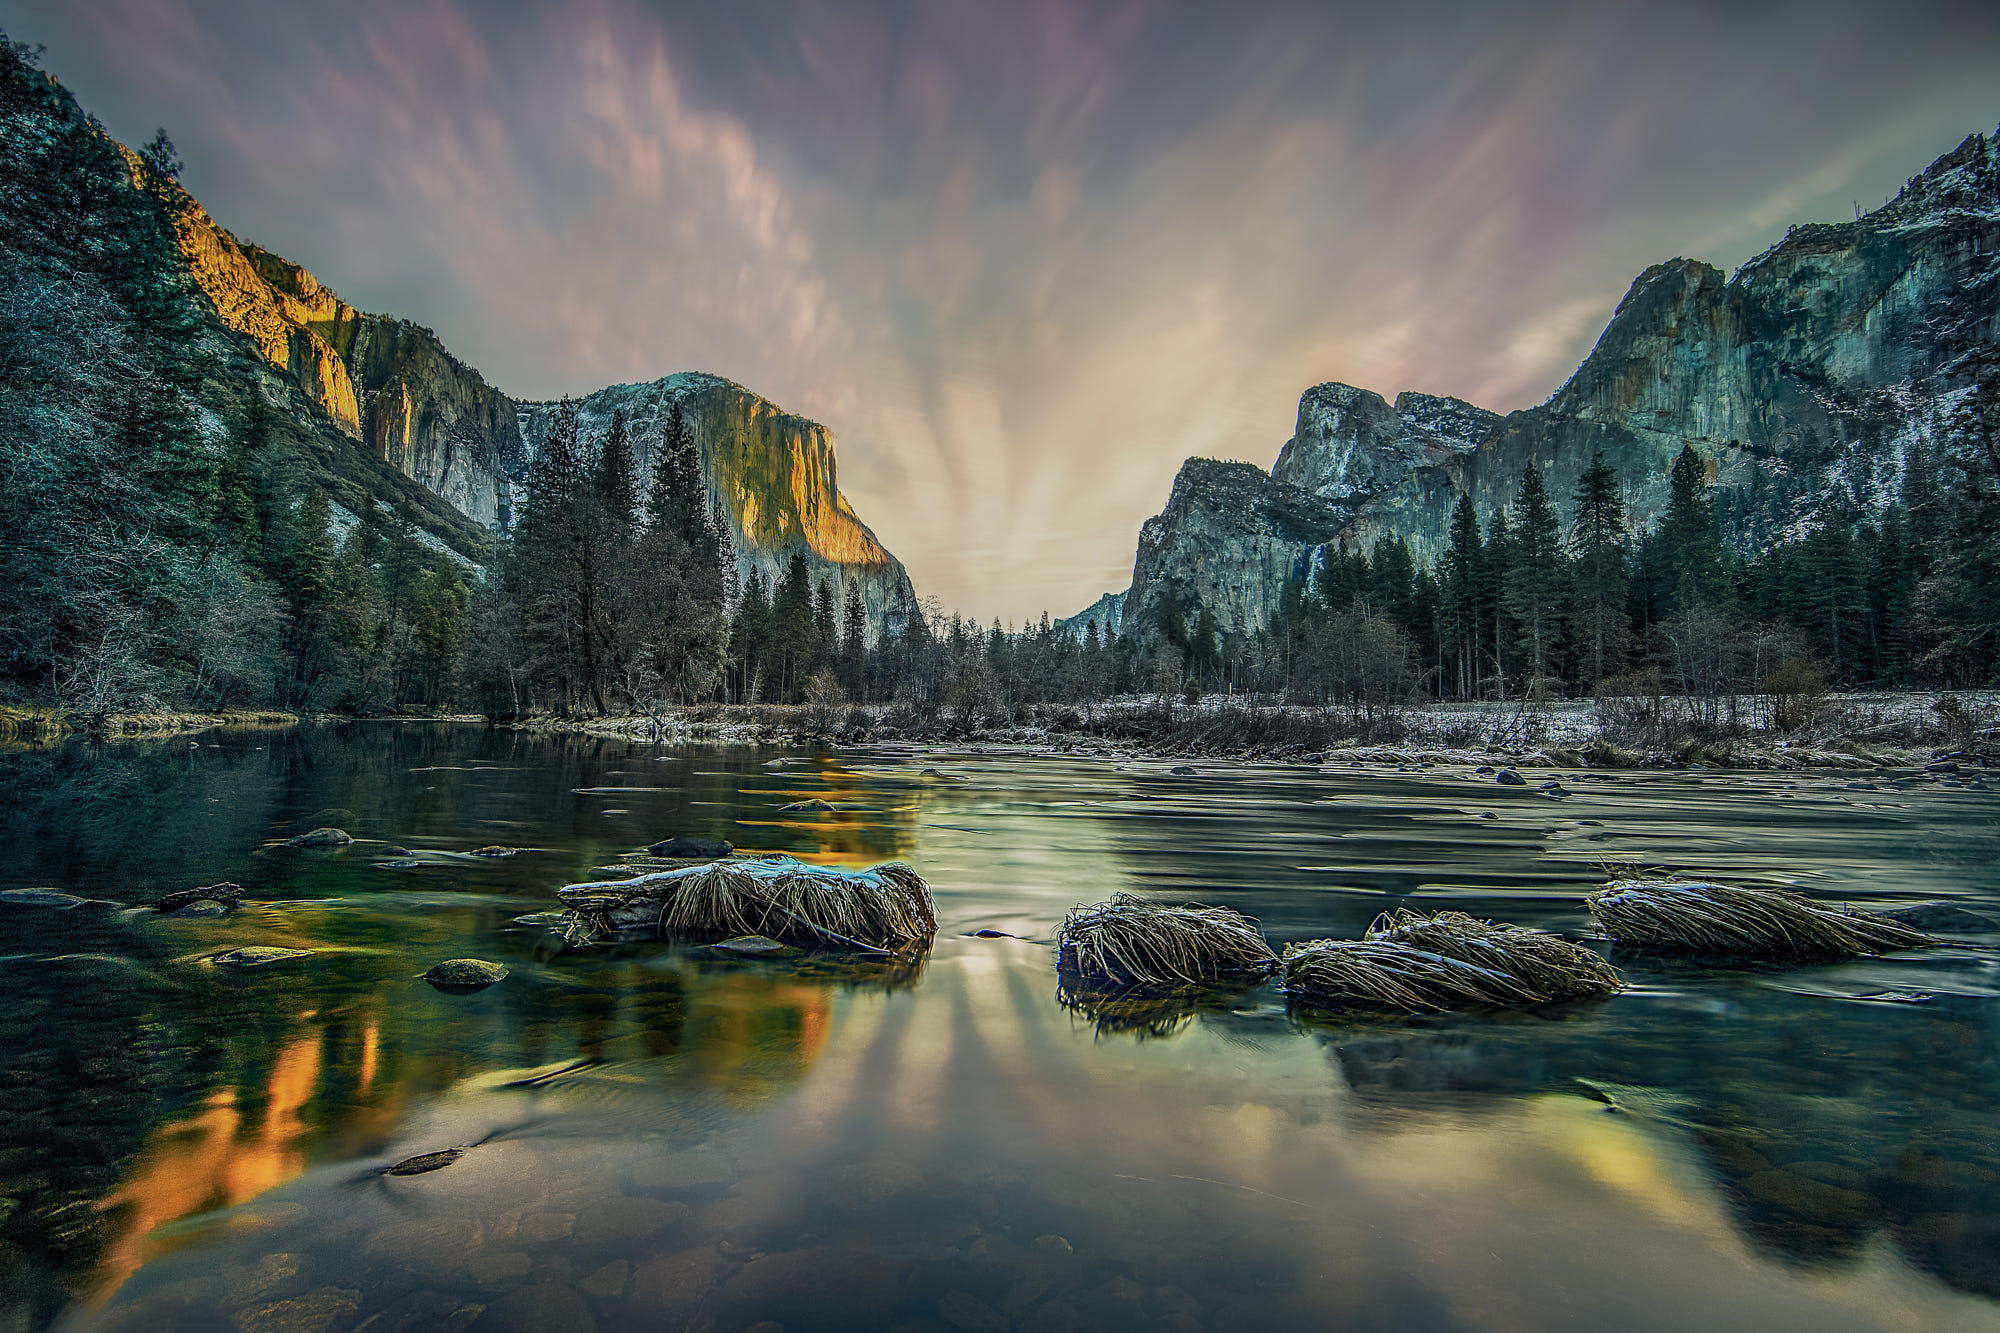 Yosemite Valley View at Morning